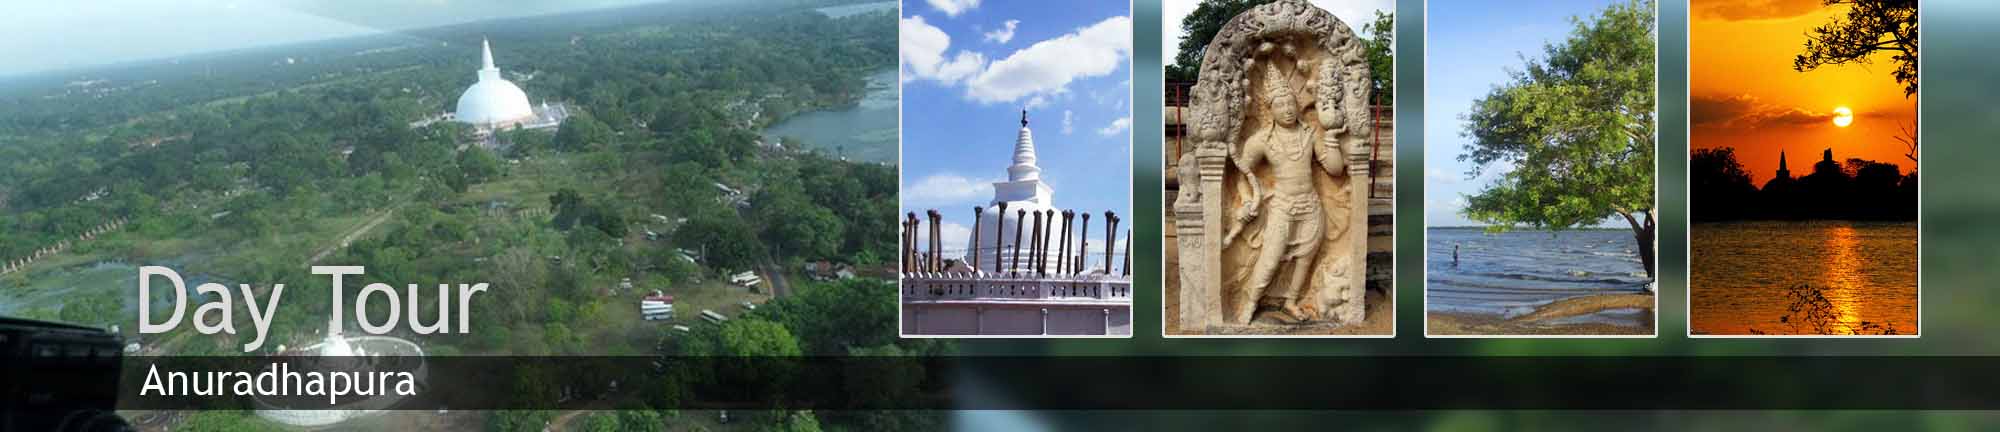 inora-travel-lanka-day-tour-banner-anuradhapura